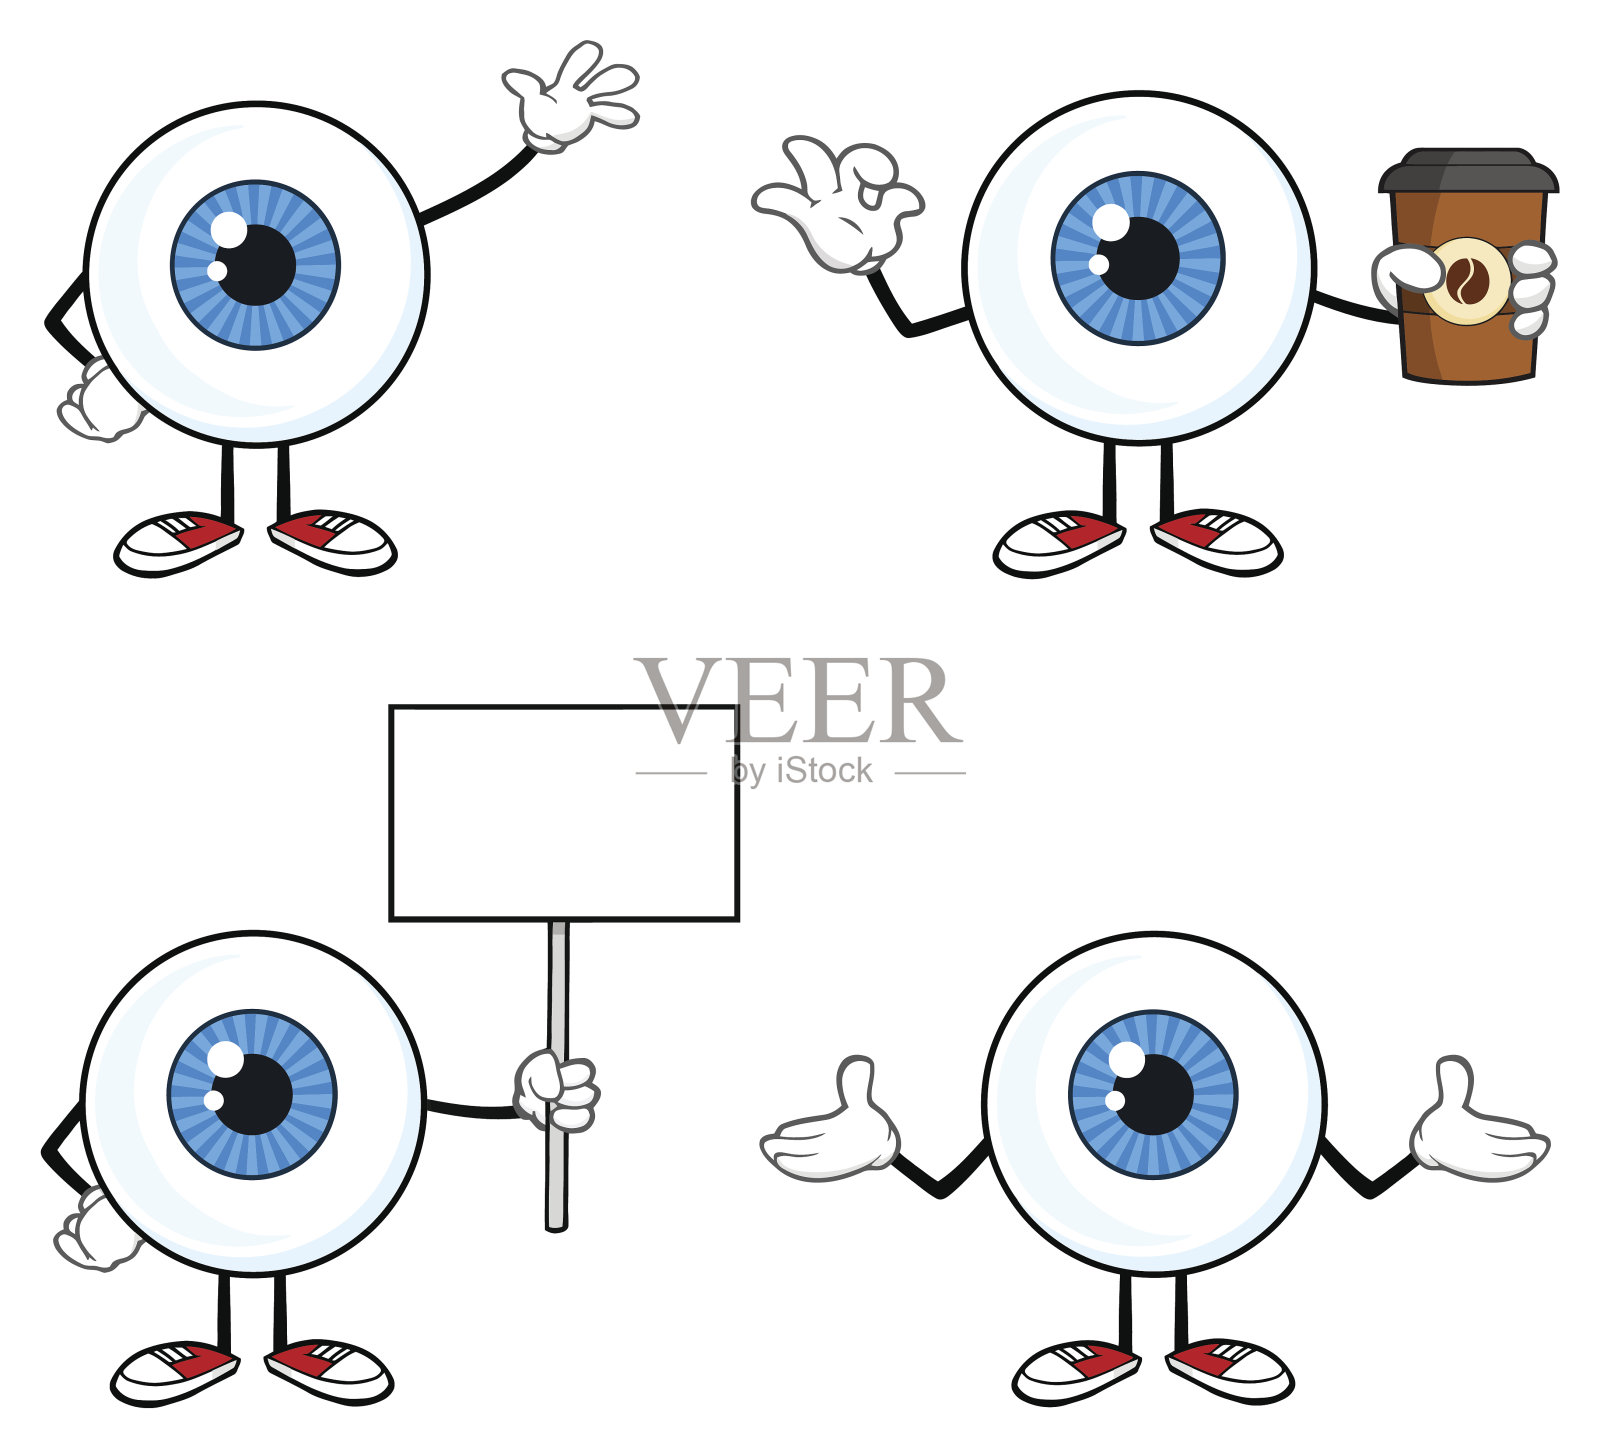 蓝色眼球Guy卡通吉祥物人物2。收藏集设计元素图片